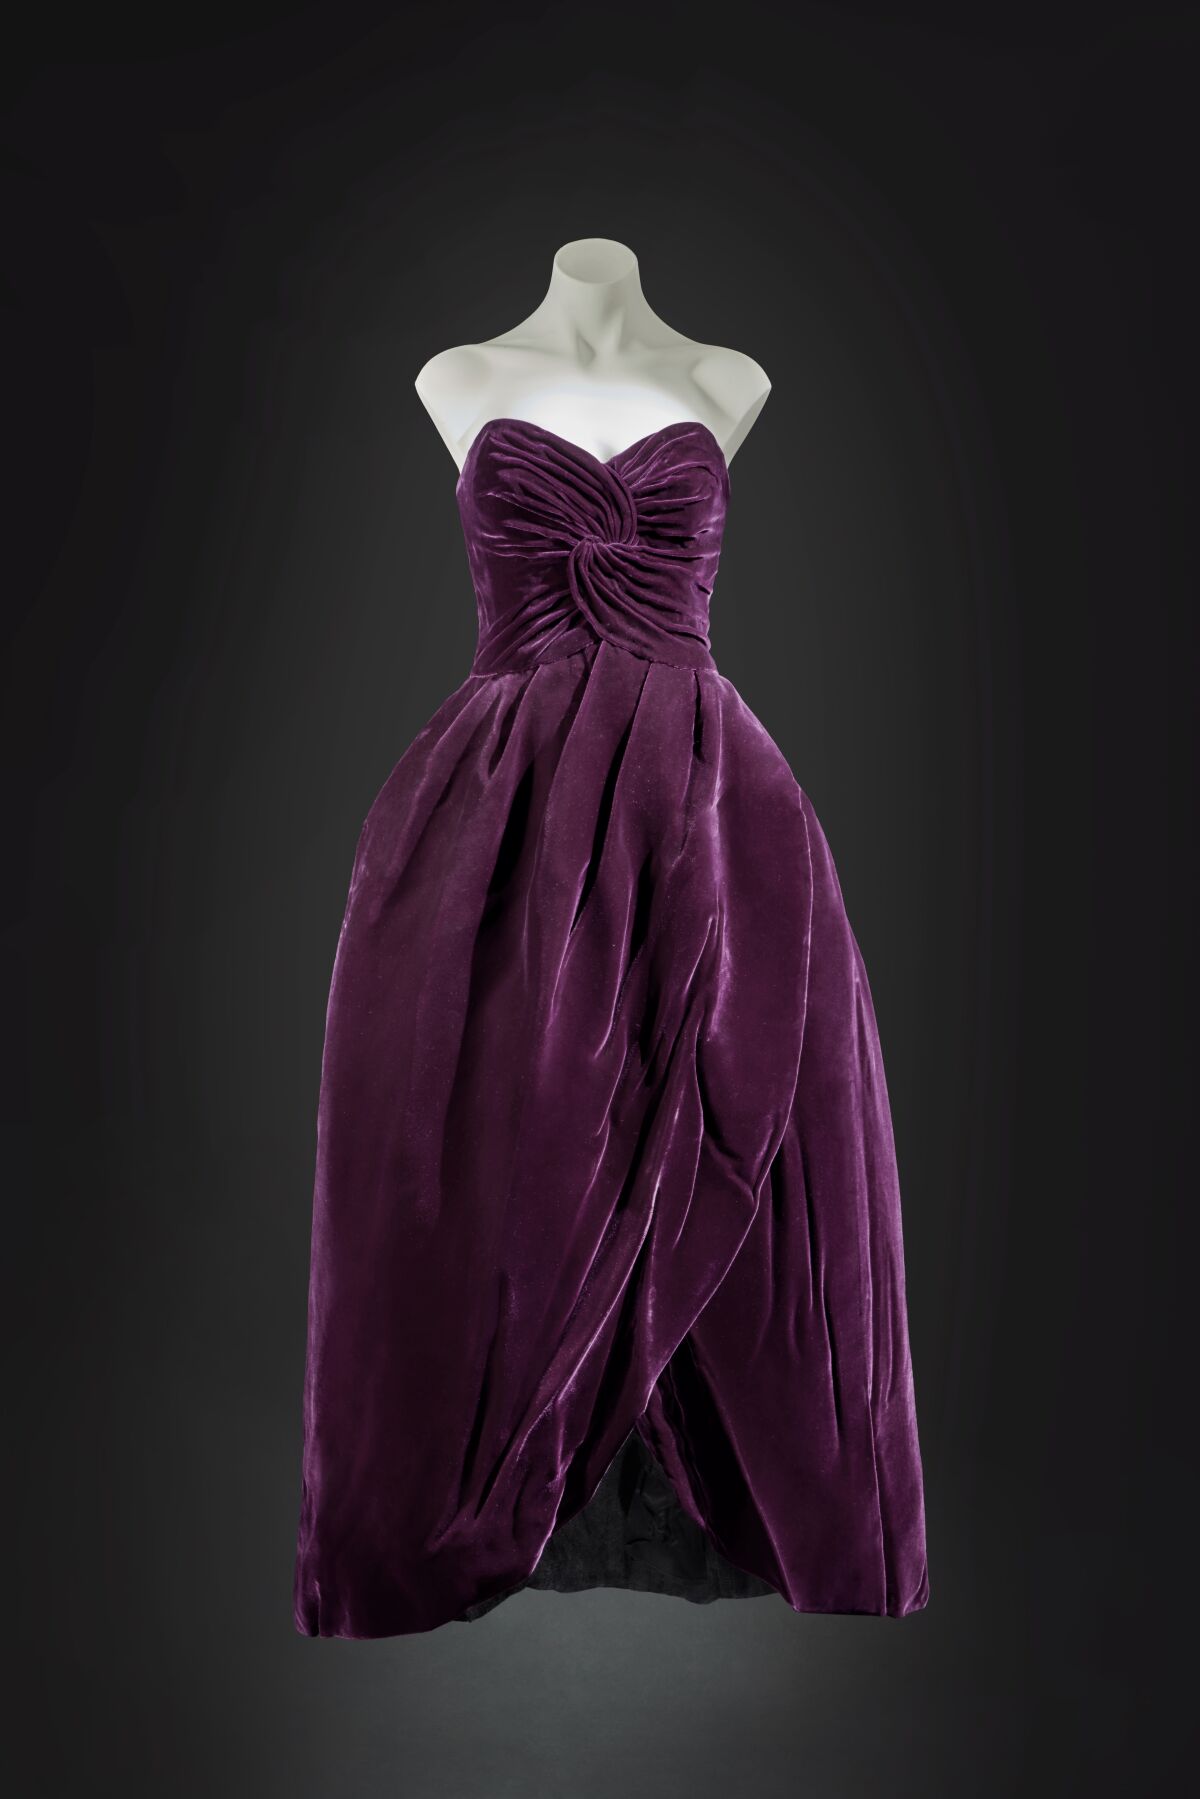 Uno de los vestidos favoritos de Lady Di, subastado por 600 mil dólares -  San Diego Union-Tribune en Español